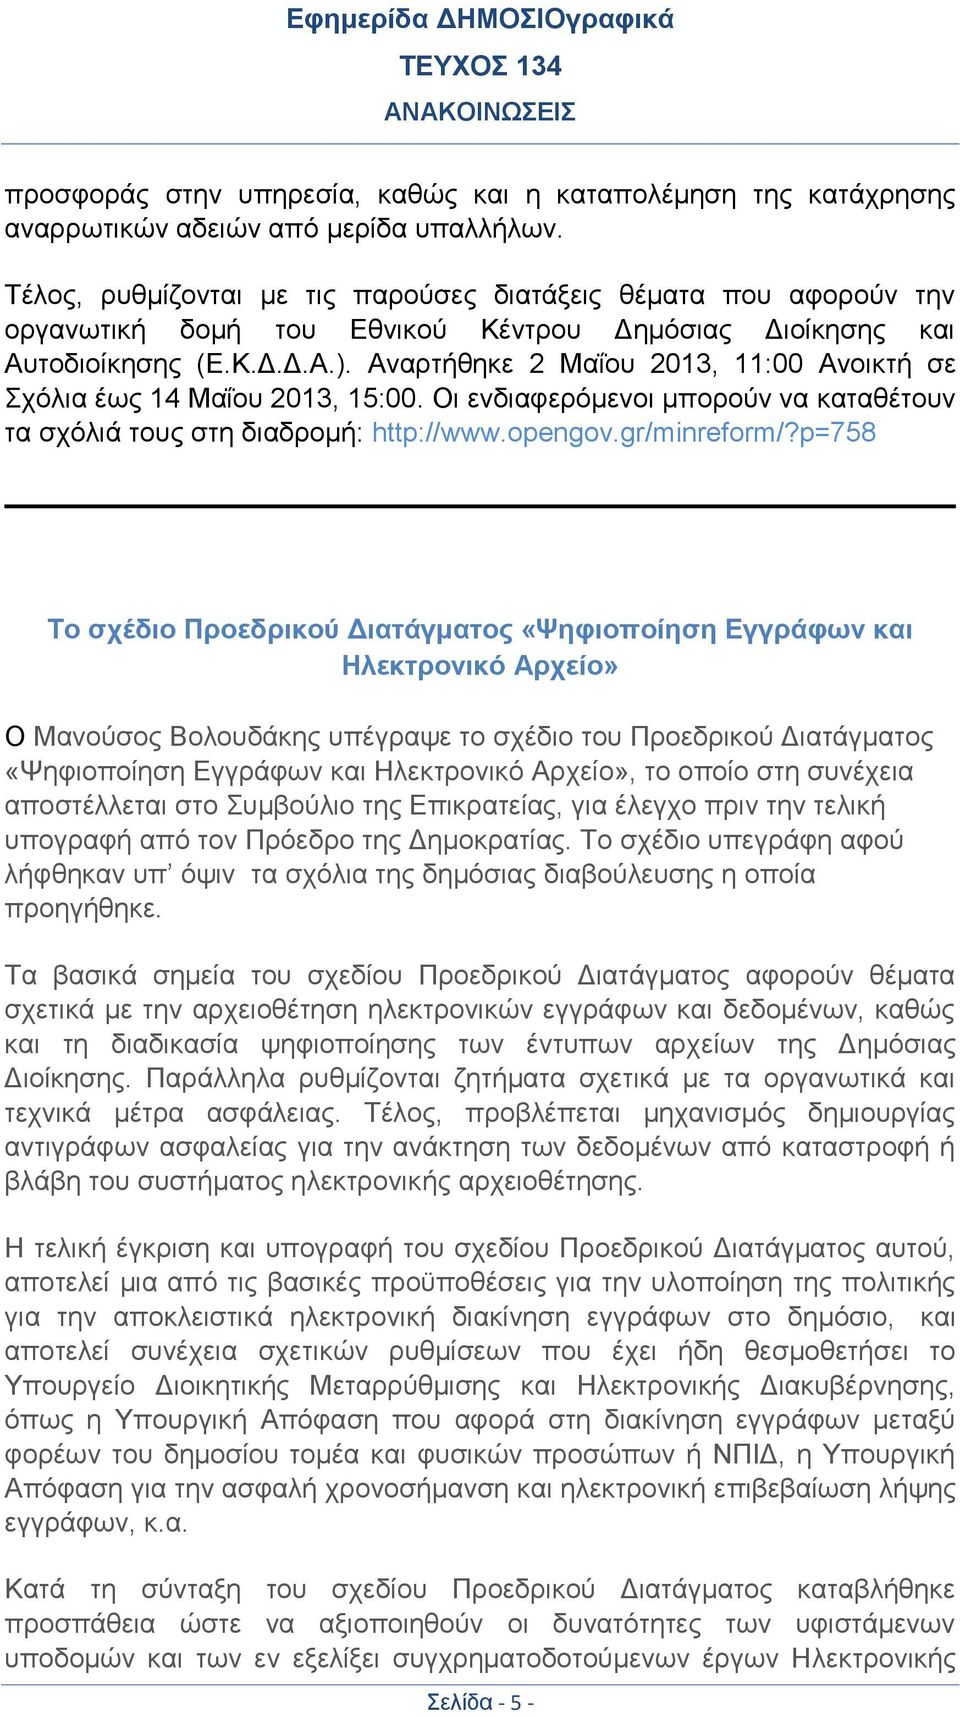 Αναρτήθηκε 2 Μαΐου 2013, 11:00 Ανοικτή σε Σχόλια έως 14 Μαΐου 2013, 15:00. Οι ενδιαφερόμενοι μπορούν να καταθέτουν τα σχόλιά τους στη διαδρομή: http://www.opengov.gr/minreform/?